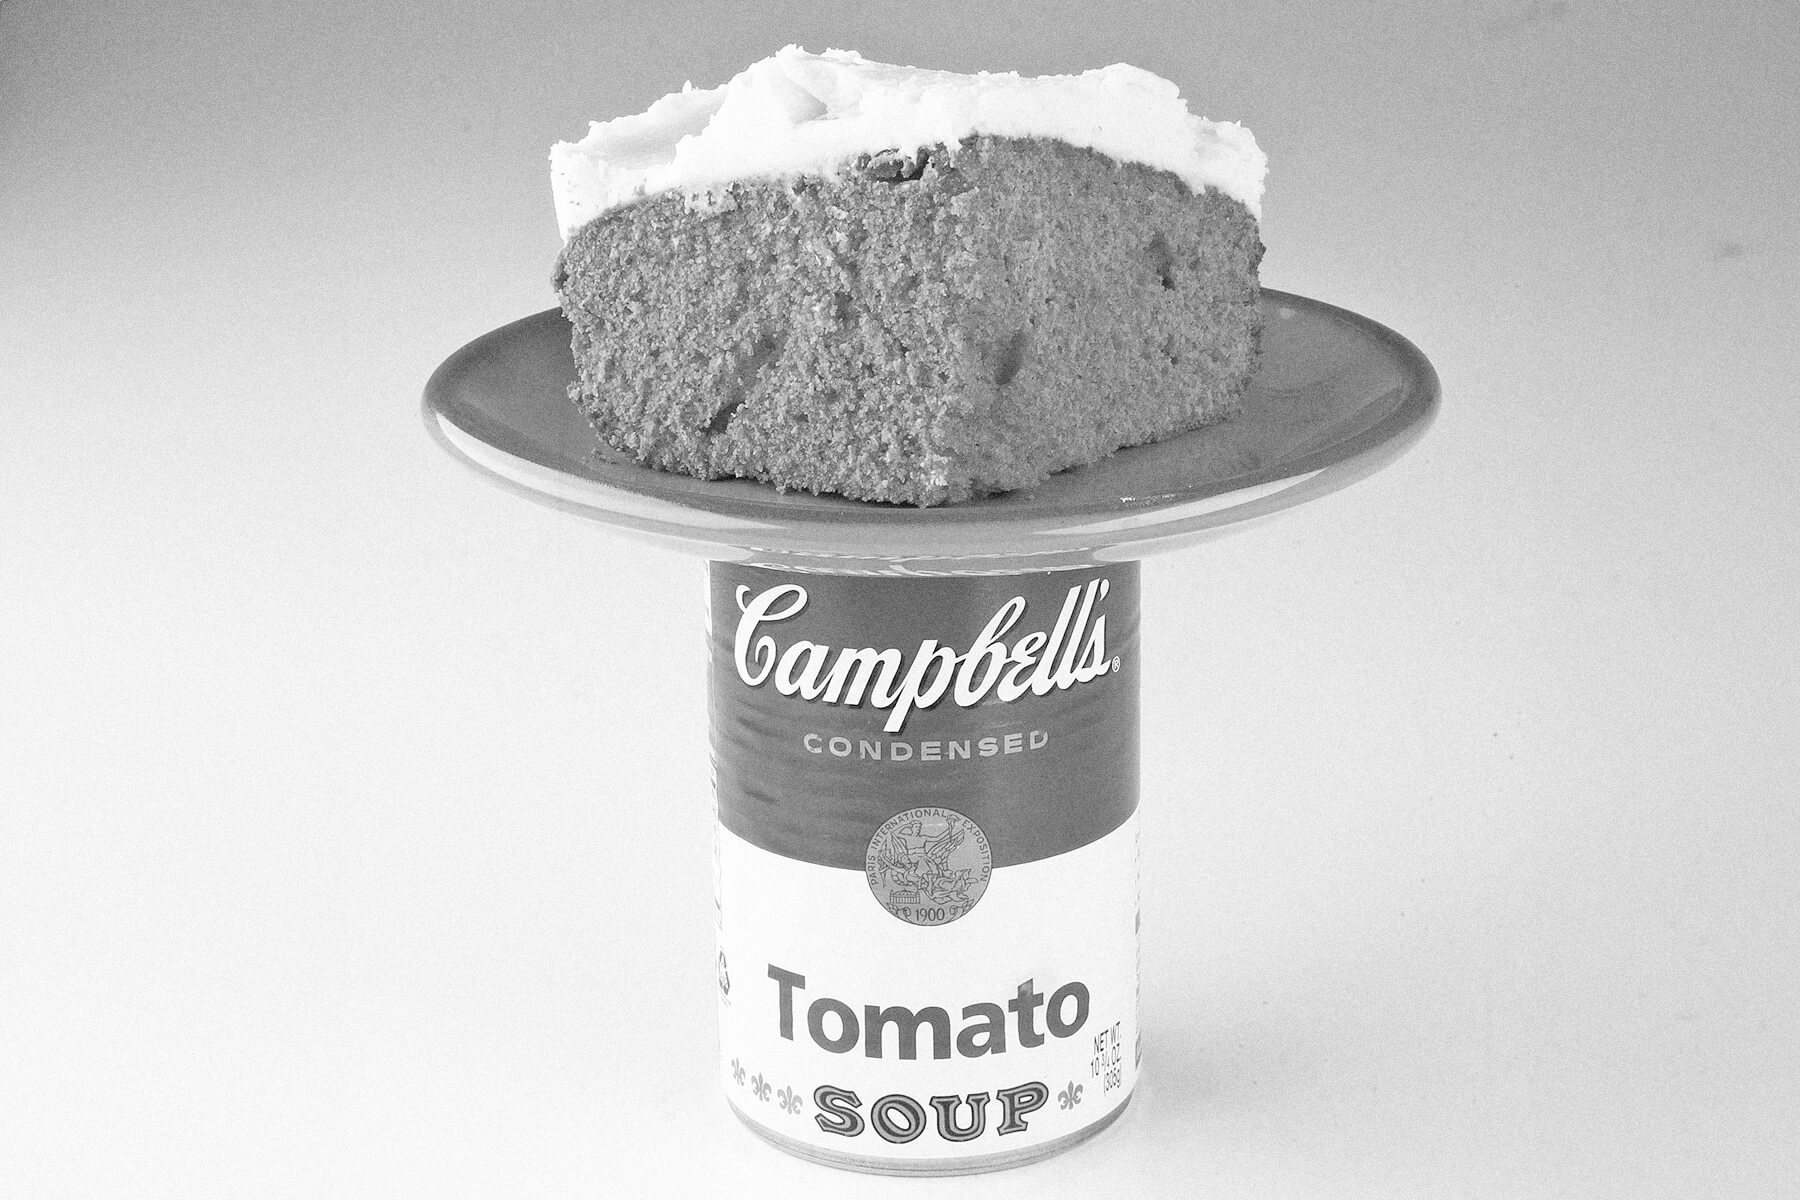 Tomato soup cake